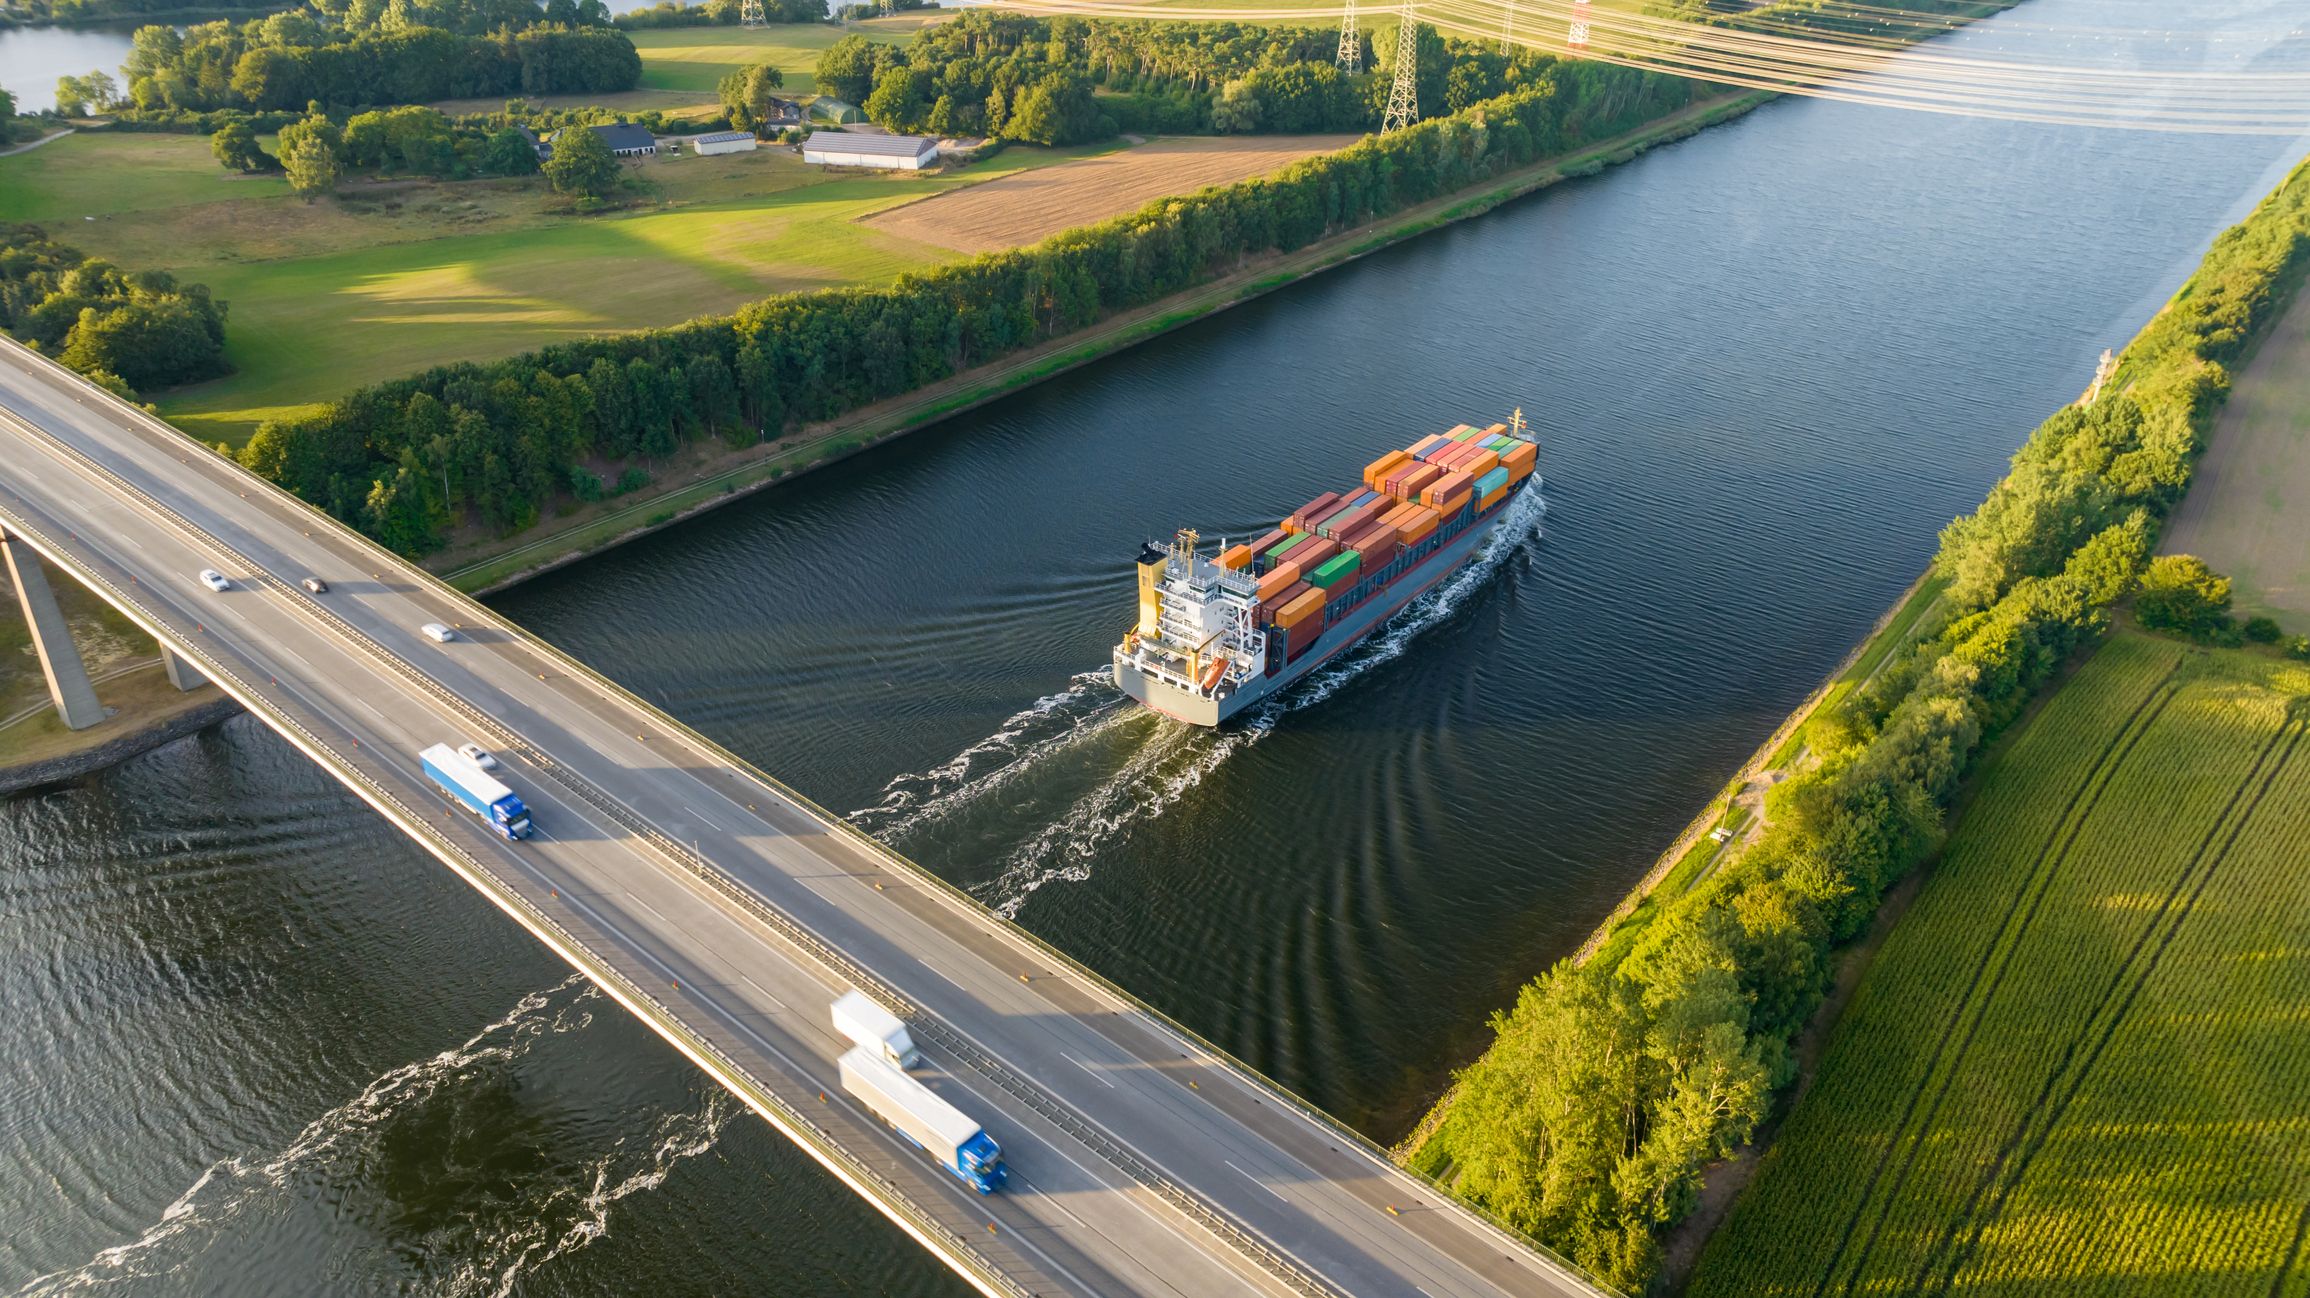 De aquí a 2030, el objetivo es transferir el 30% del tráfico de mercancías por carretera de larga distancia a soluciones más sostenibles, como las vías navegables interiores o el ferrocarril. (Getty Images)